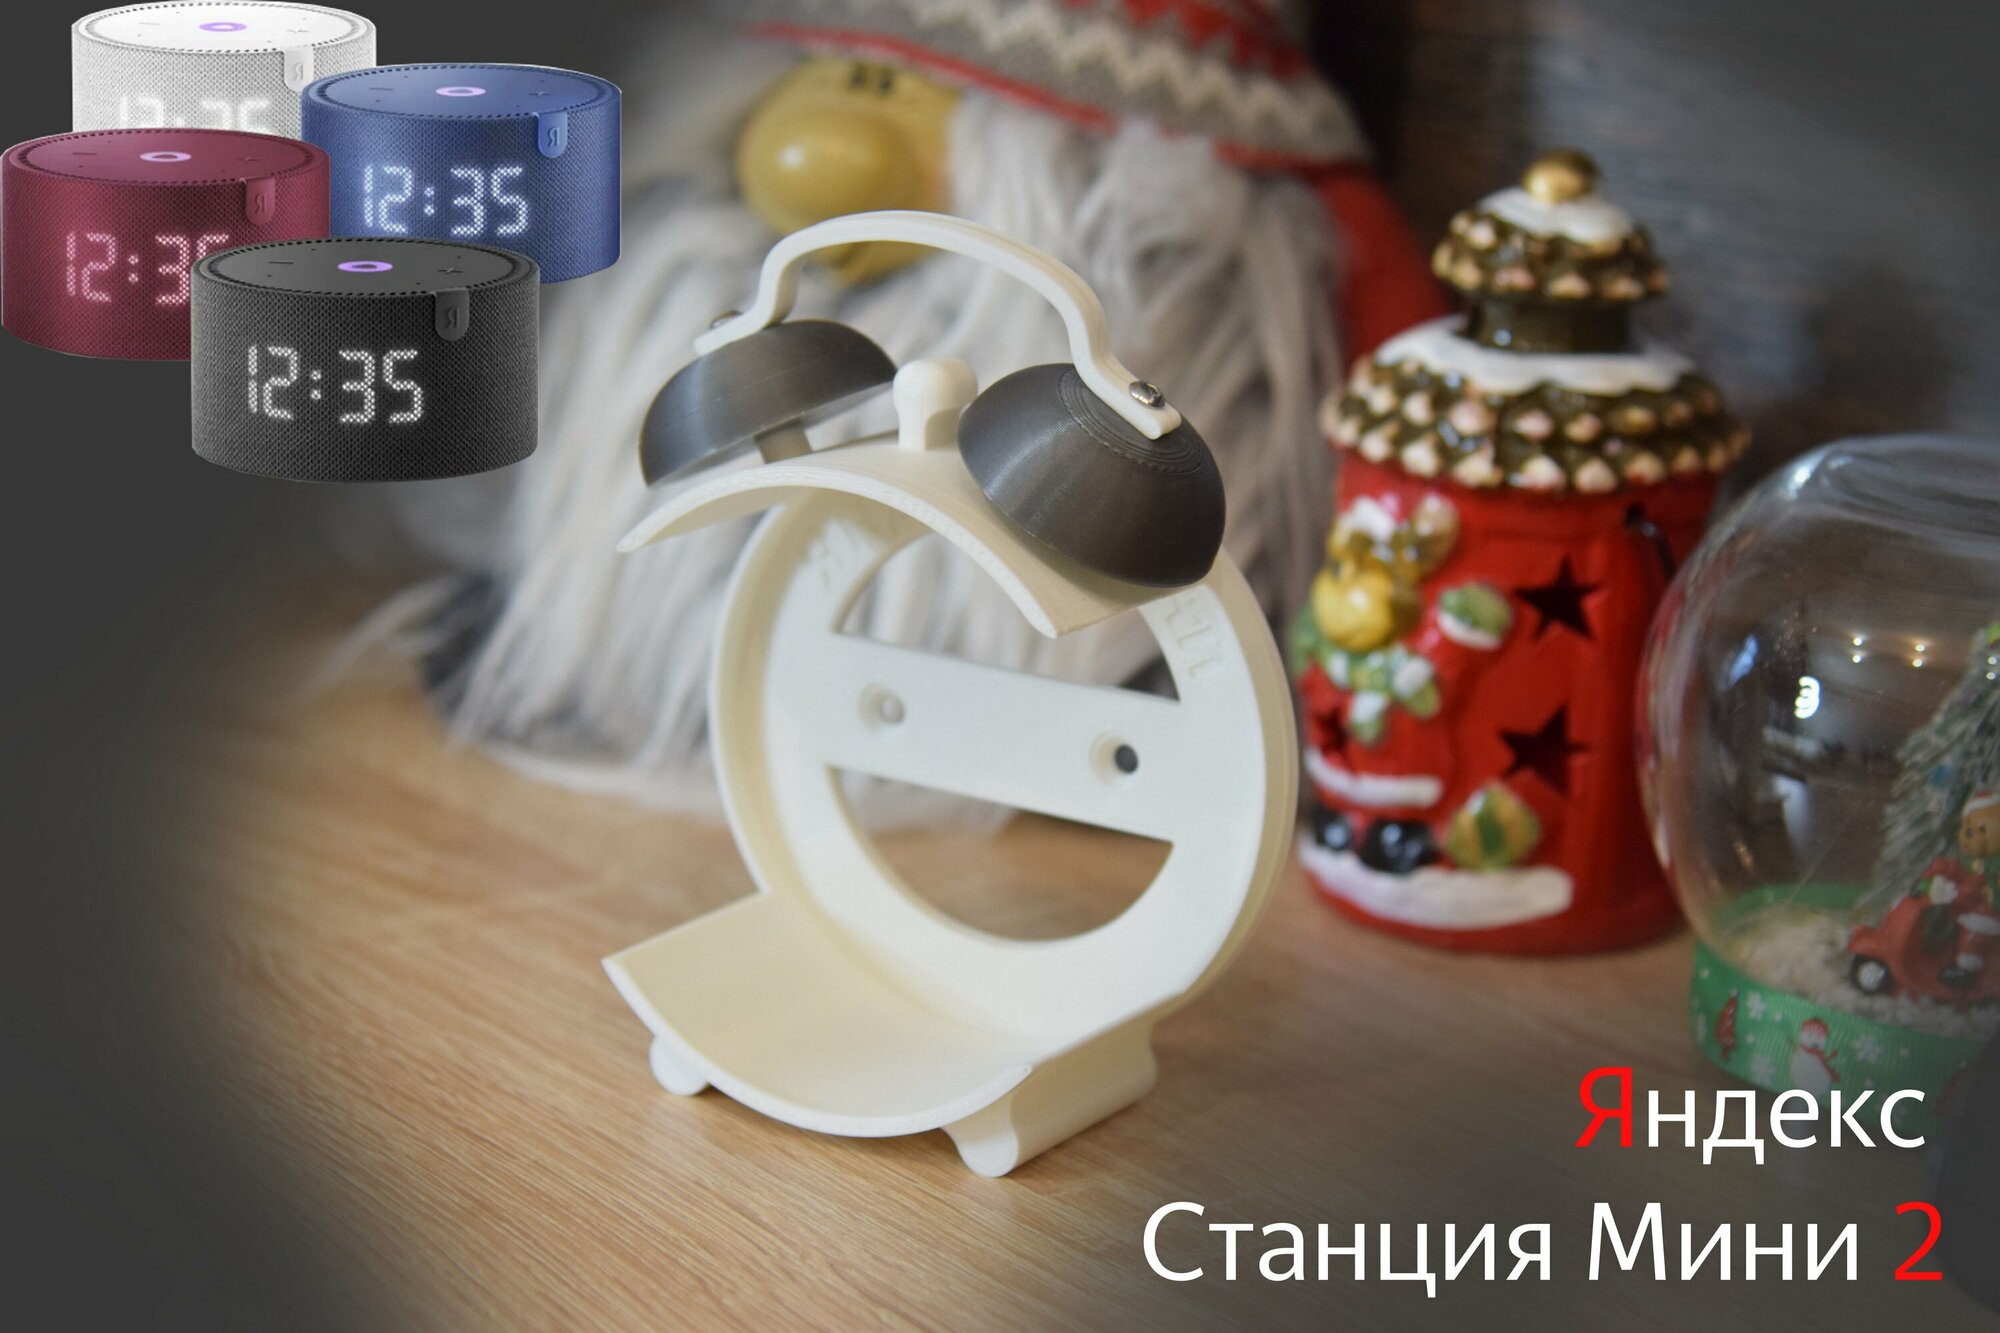 Подставка для Яндекс Cтанции Мини 2 (с часами и без часов) (белая с серым)